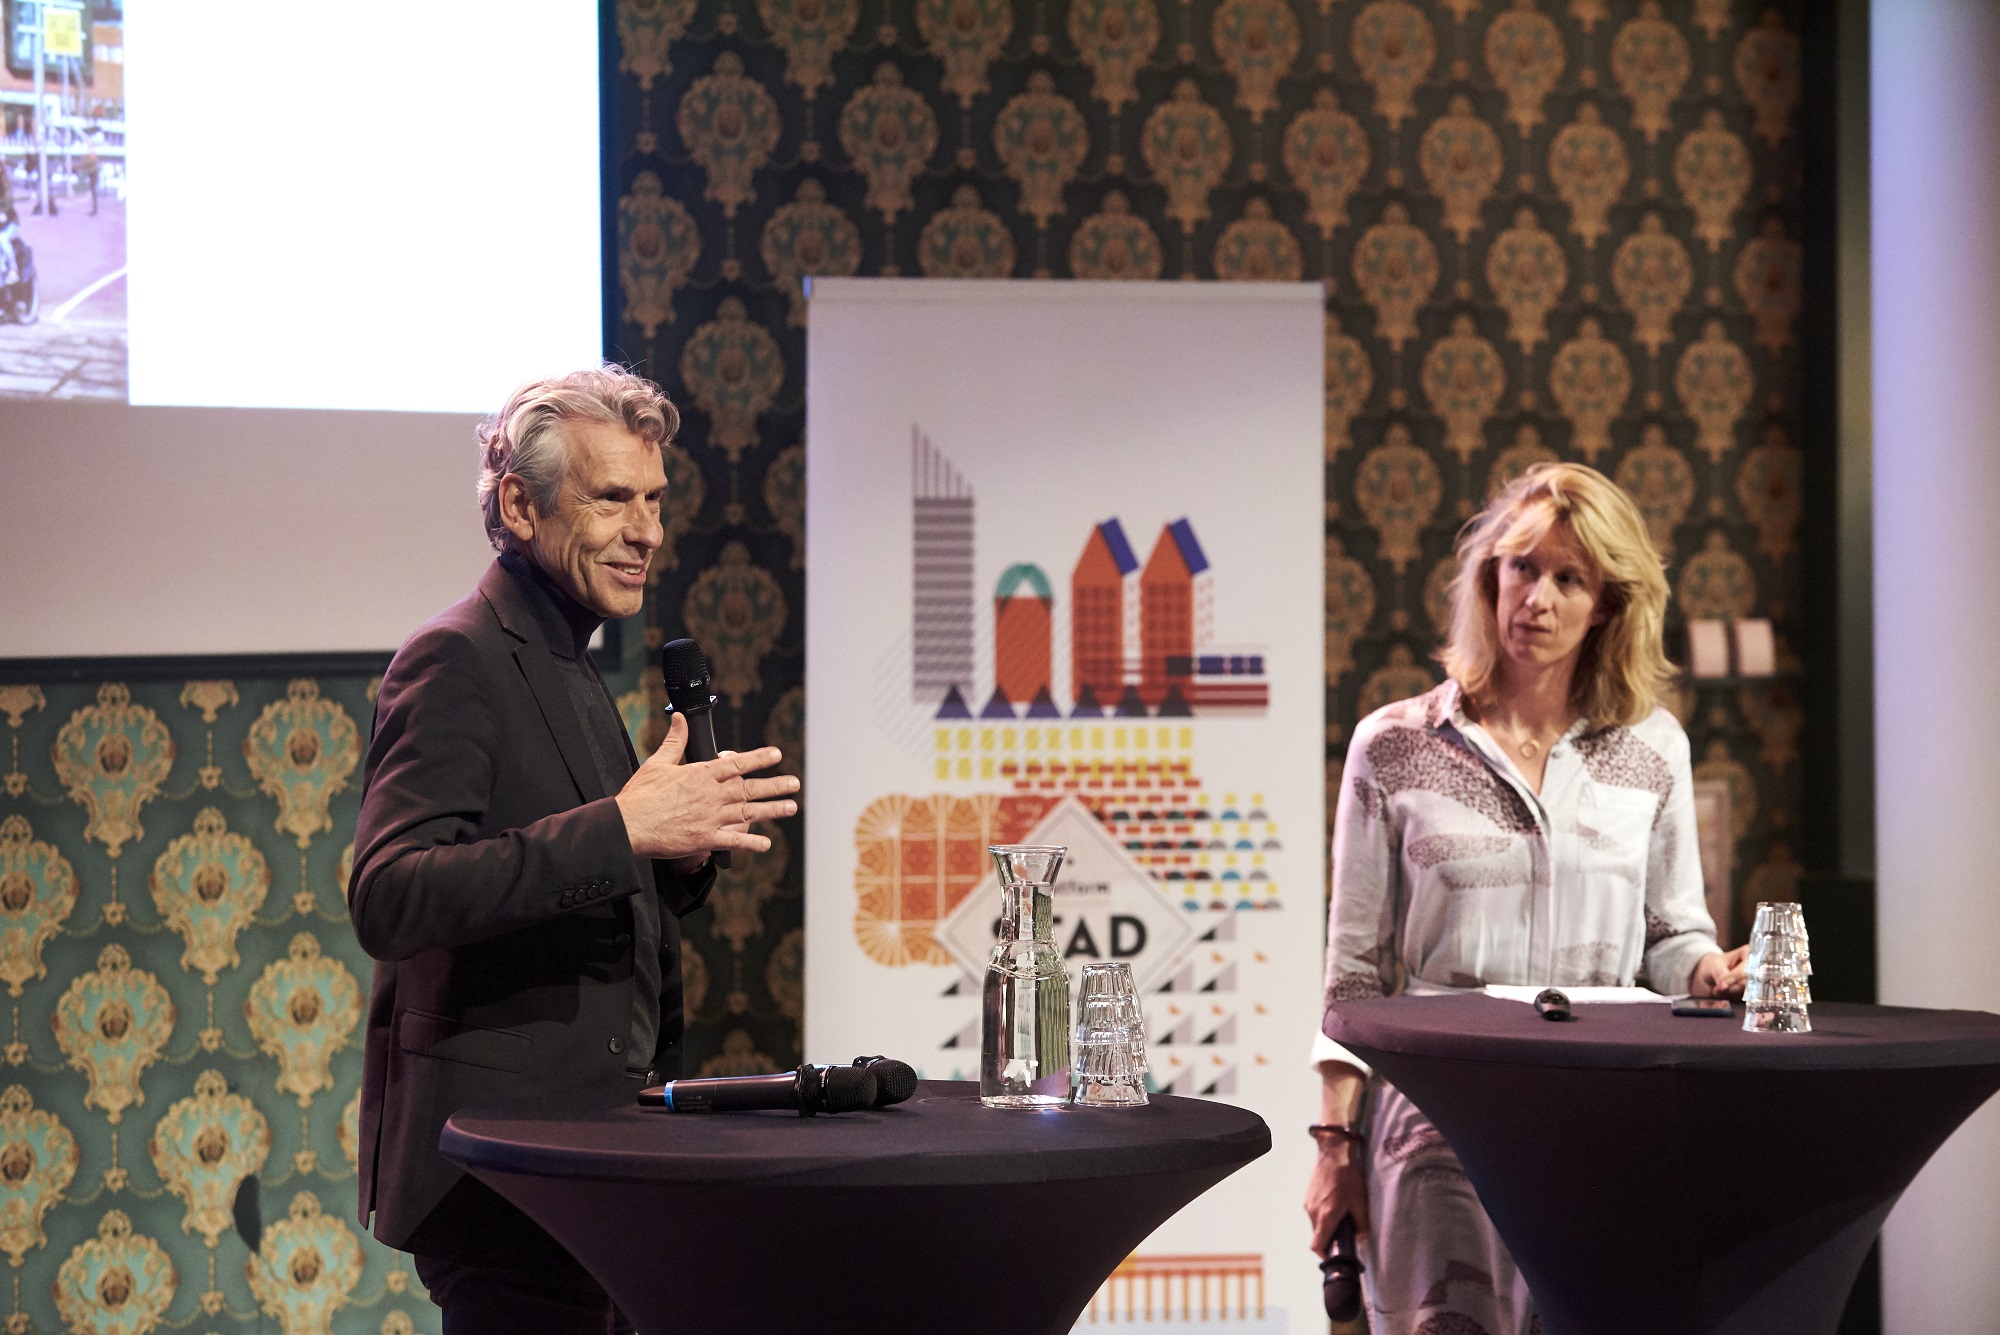 Peter van der gugten tijdens stadgesprek over groei in Den Haag